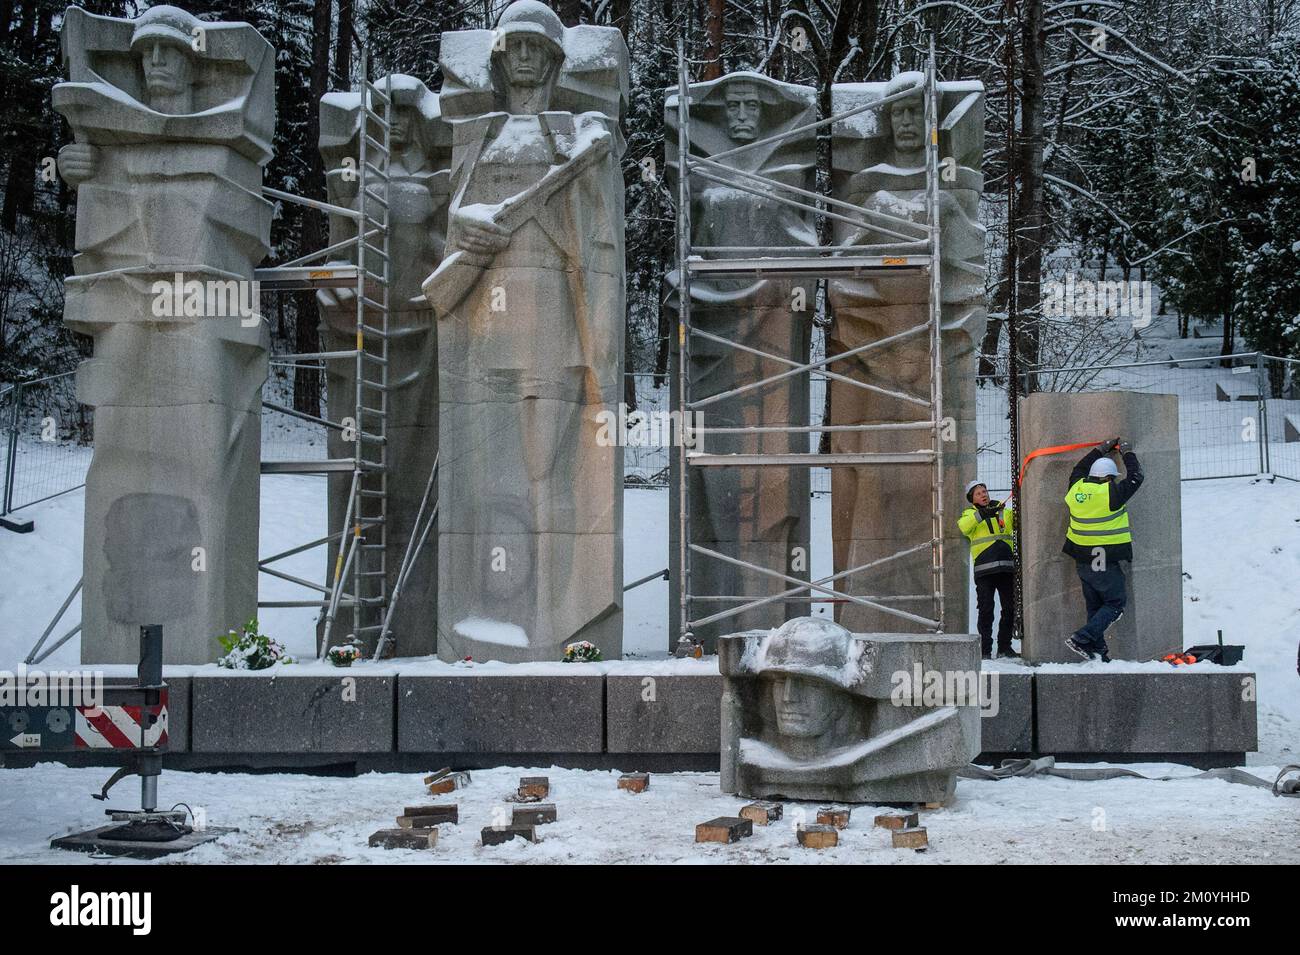 Vilnius, Lituaniua, 6 décembre 2022, des travailleurs ont démantelé le monument des soldats de l'Armée rouge soviétique au cimetière d'Antakalnis à Vilnius. Le mémorial, construit en 1984, a été dédié aux soldats de l'Armée rouge qui sont morts pendant la libération de Vilnius des envahisseurs nazis pendant la Seconde Guerre mondiale. Sur 6 décembre 2022, le démantèlement du monument a commencé malgré des mesures provisoires, qui ont été imposées par le Comité des droits de l'homme des Nations Unies après une pétition signée par quelques «Russes ethniques». L'ambassade de Russie en Lituanie a qualifié le retrait du monument de « moquerie barbare » et a appelé « à évaluer cette de Banque D'Images